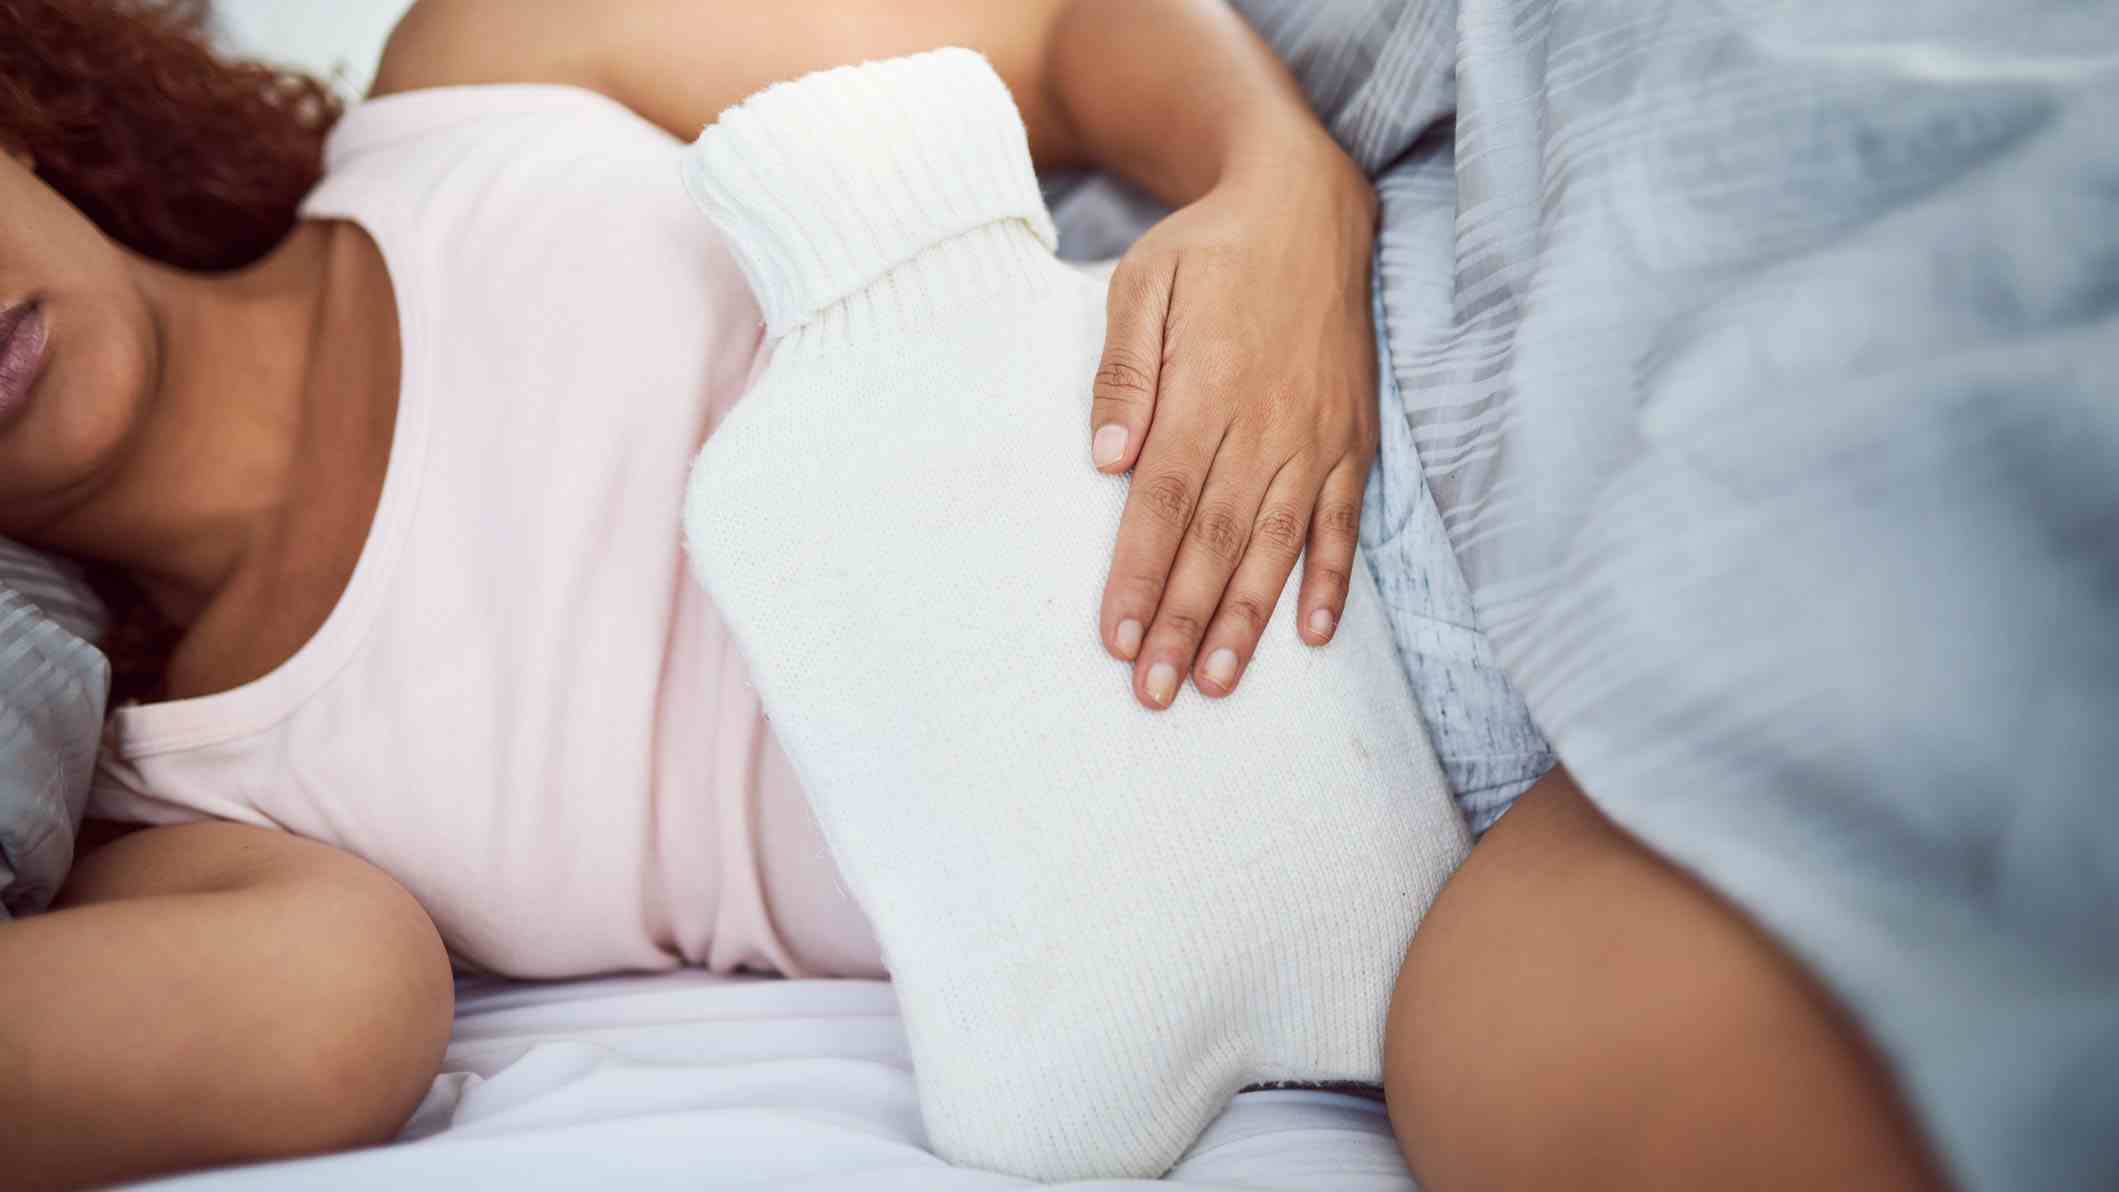 Pembe uyku yeleği giyen bir kadın elinde beyaz sıcak su şişesiyle yatakta yatıyor.